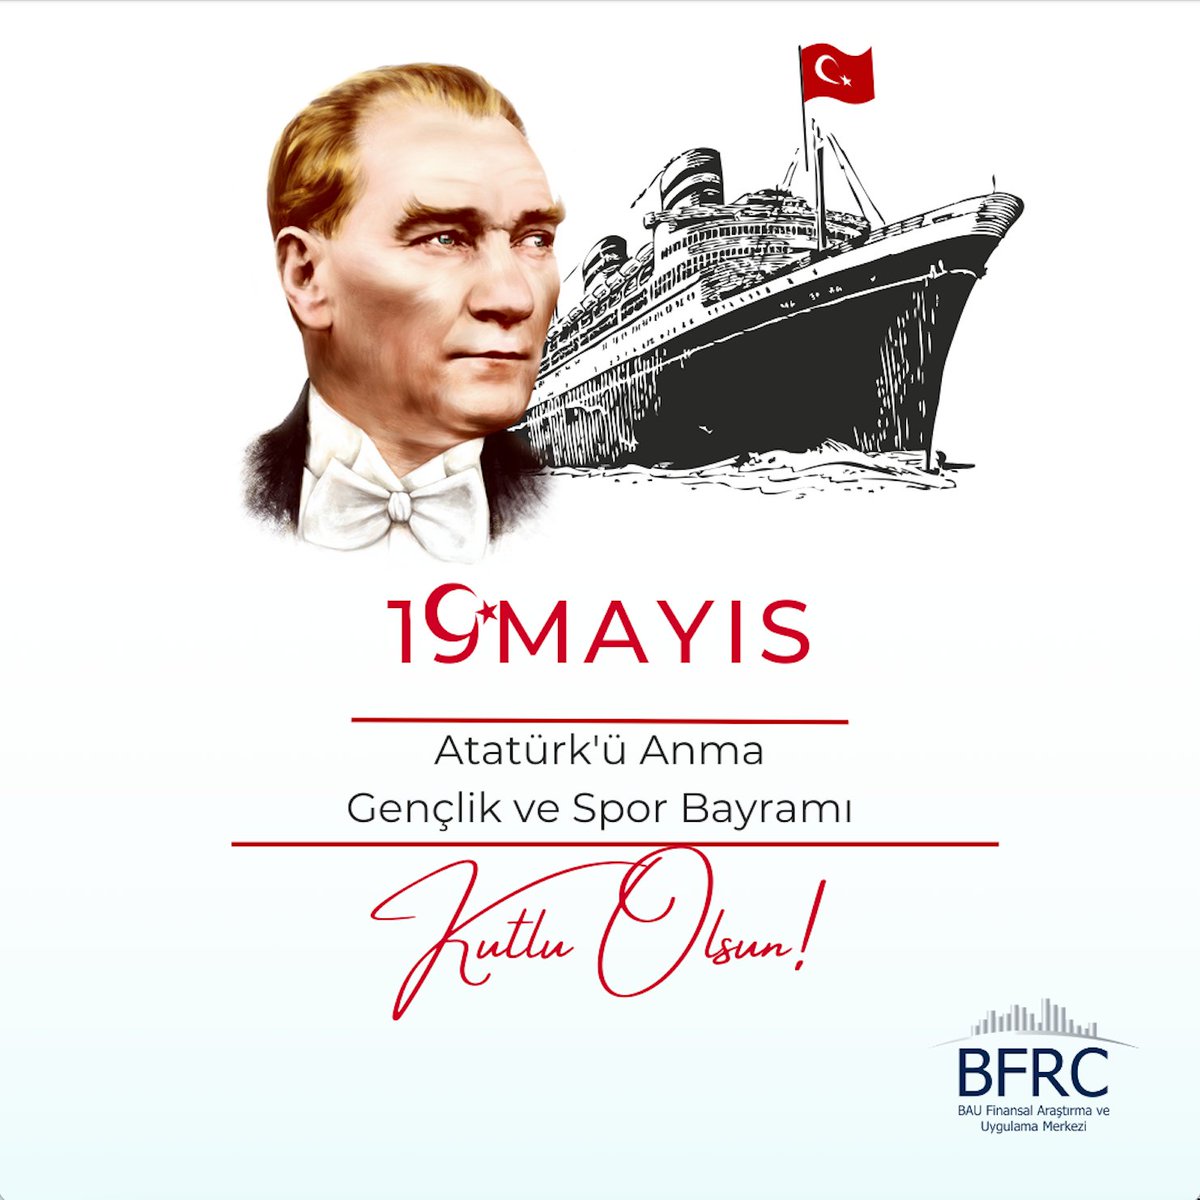 🇹🇷 19 Mayıs Atatürk'ü Anma Gençlik ve Spor Bayramı'mız Kutlu Olsun!